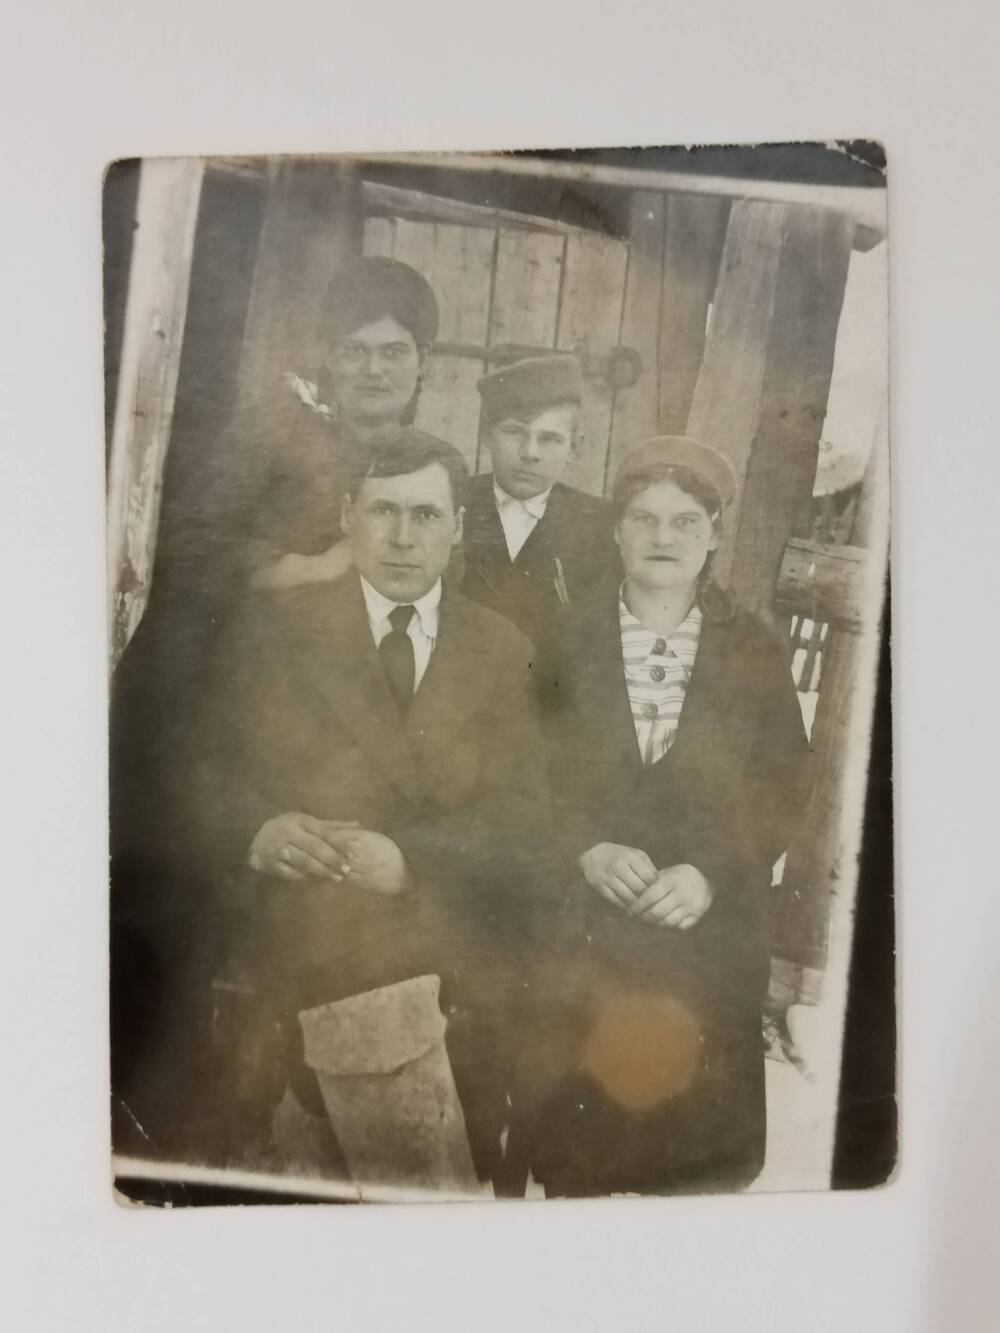 Фотография группы колхозников колхоза Новый путь, д. Копьёво из 4 человек. 1946 год.